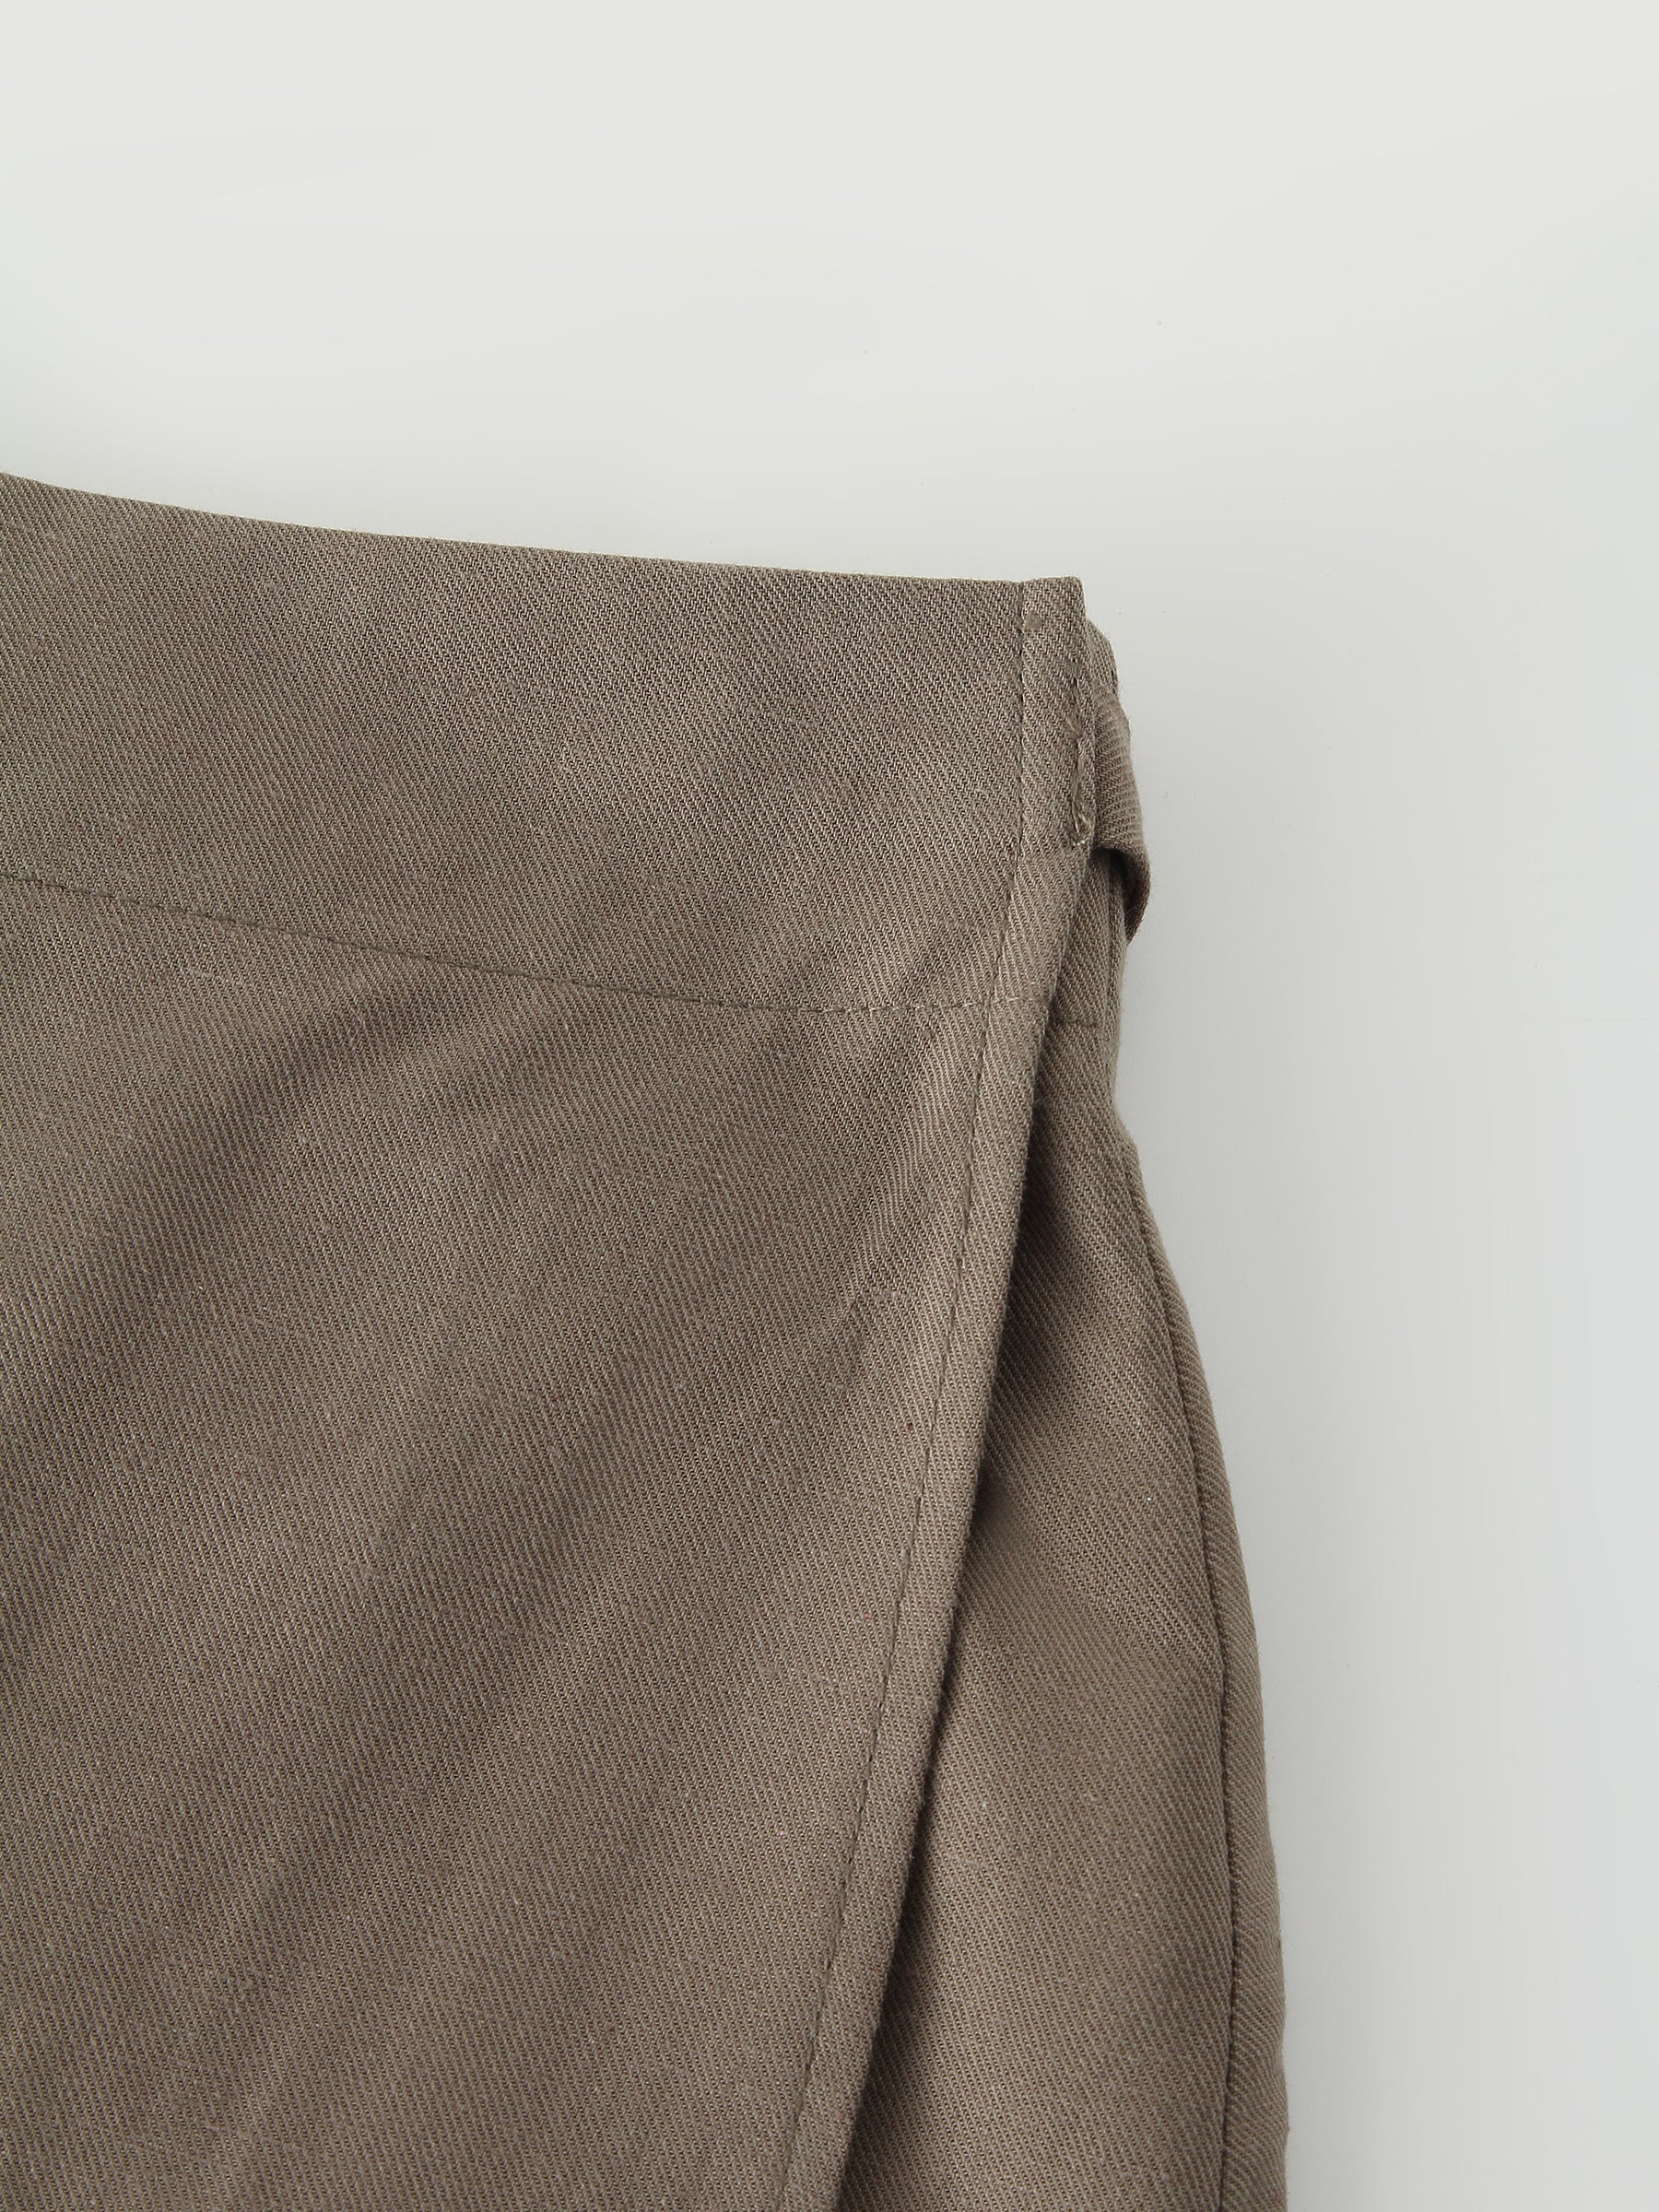 Linen Wrap Skirt-Olive